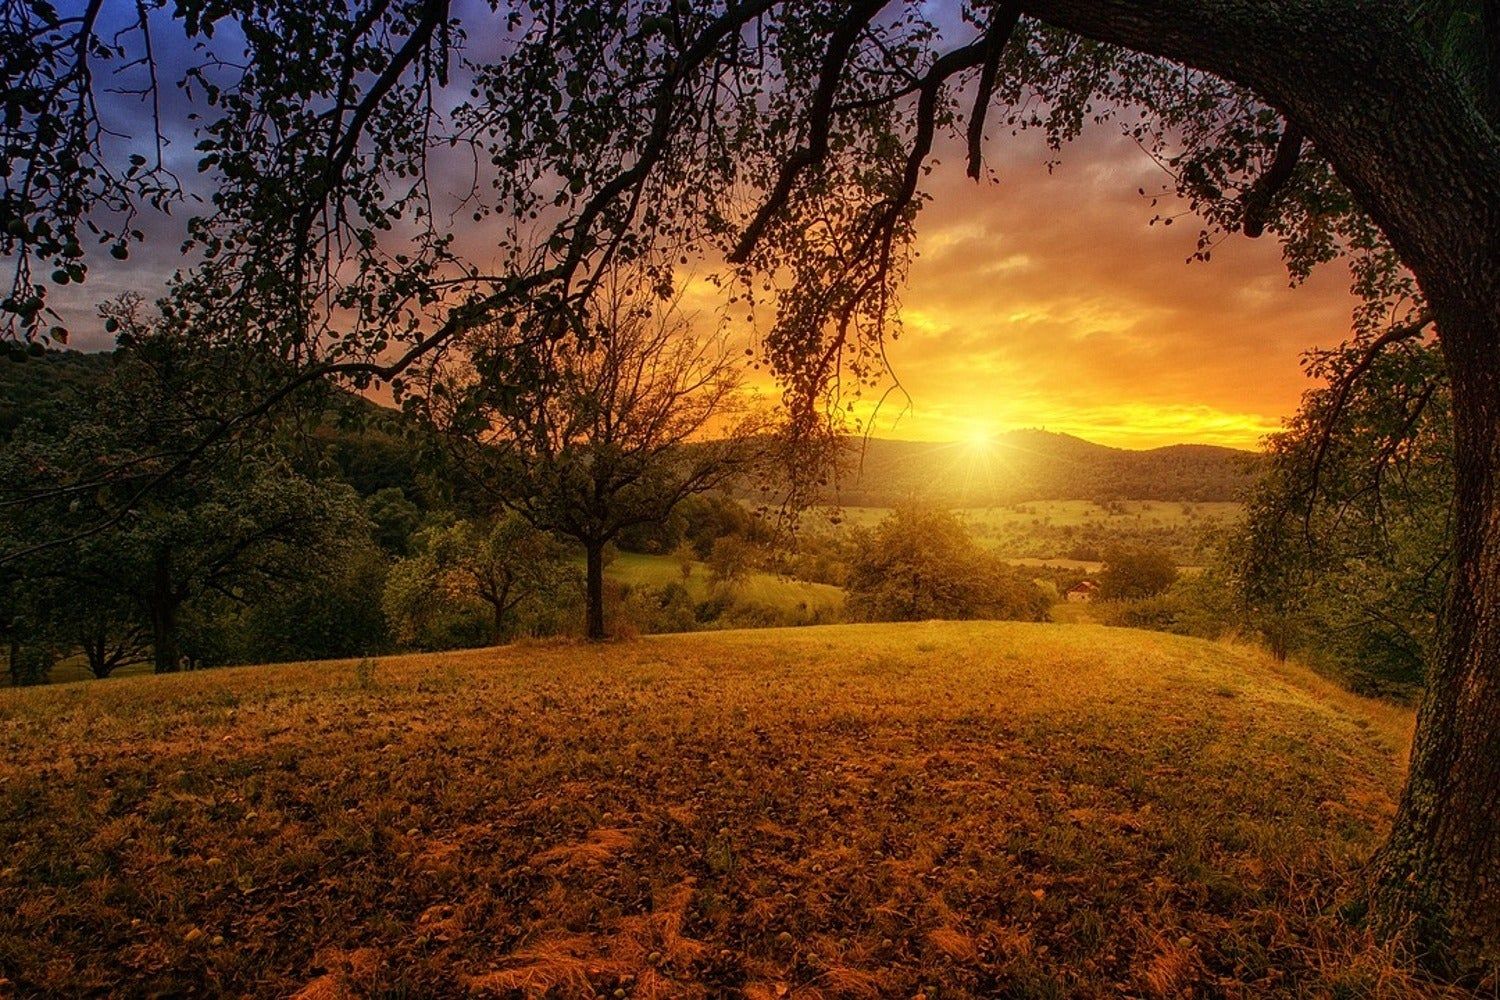  Landschaft Hintergrundbild 1500x1000. Fototapete Eine Landschaft im Sonnenuntergang